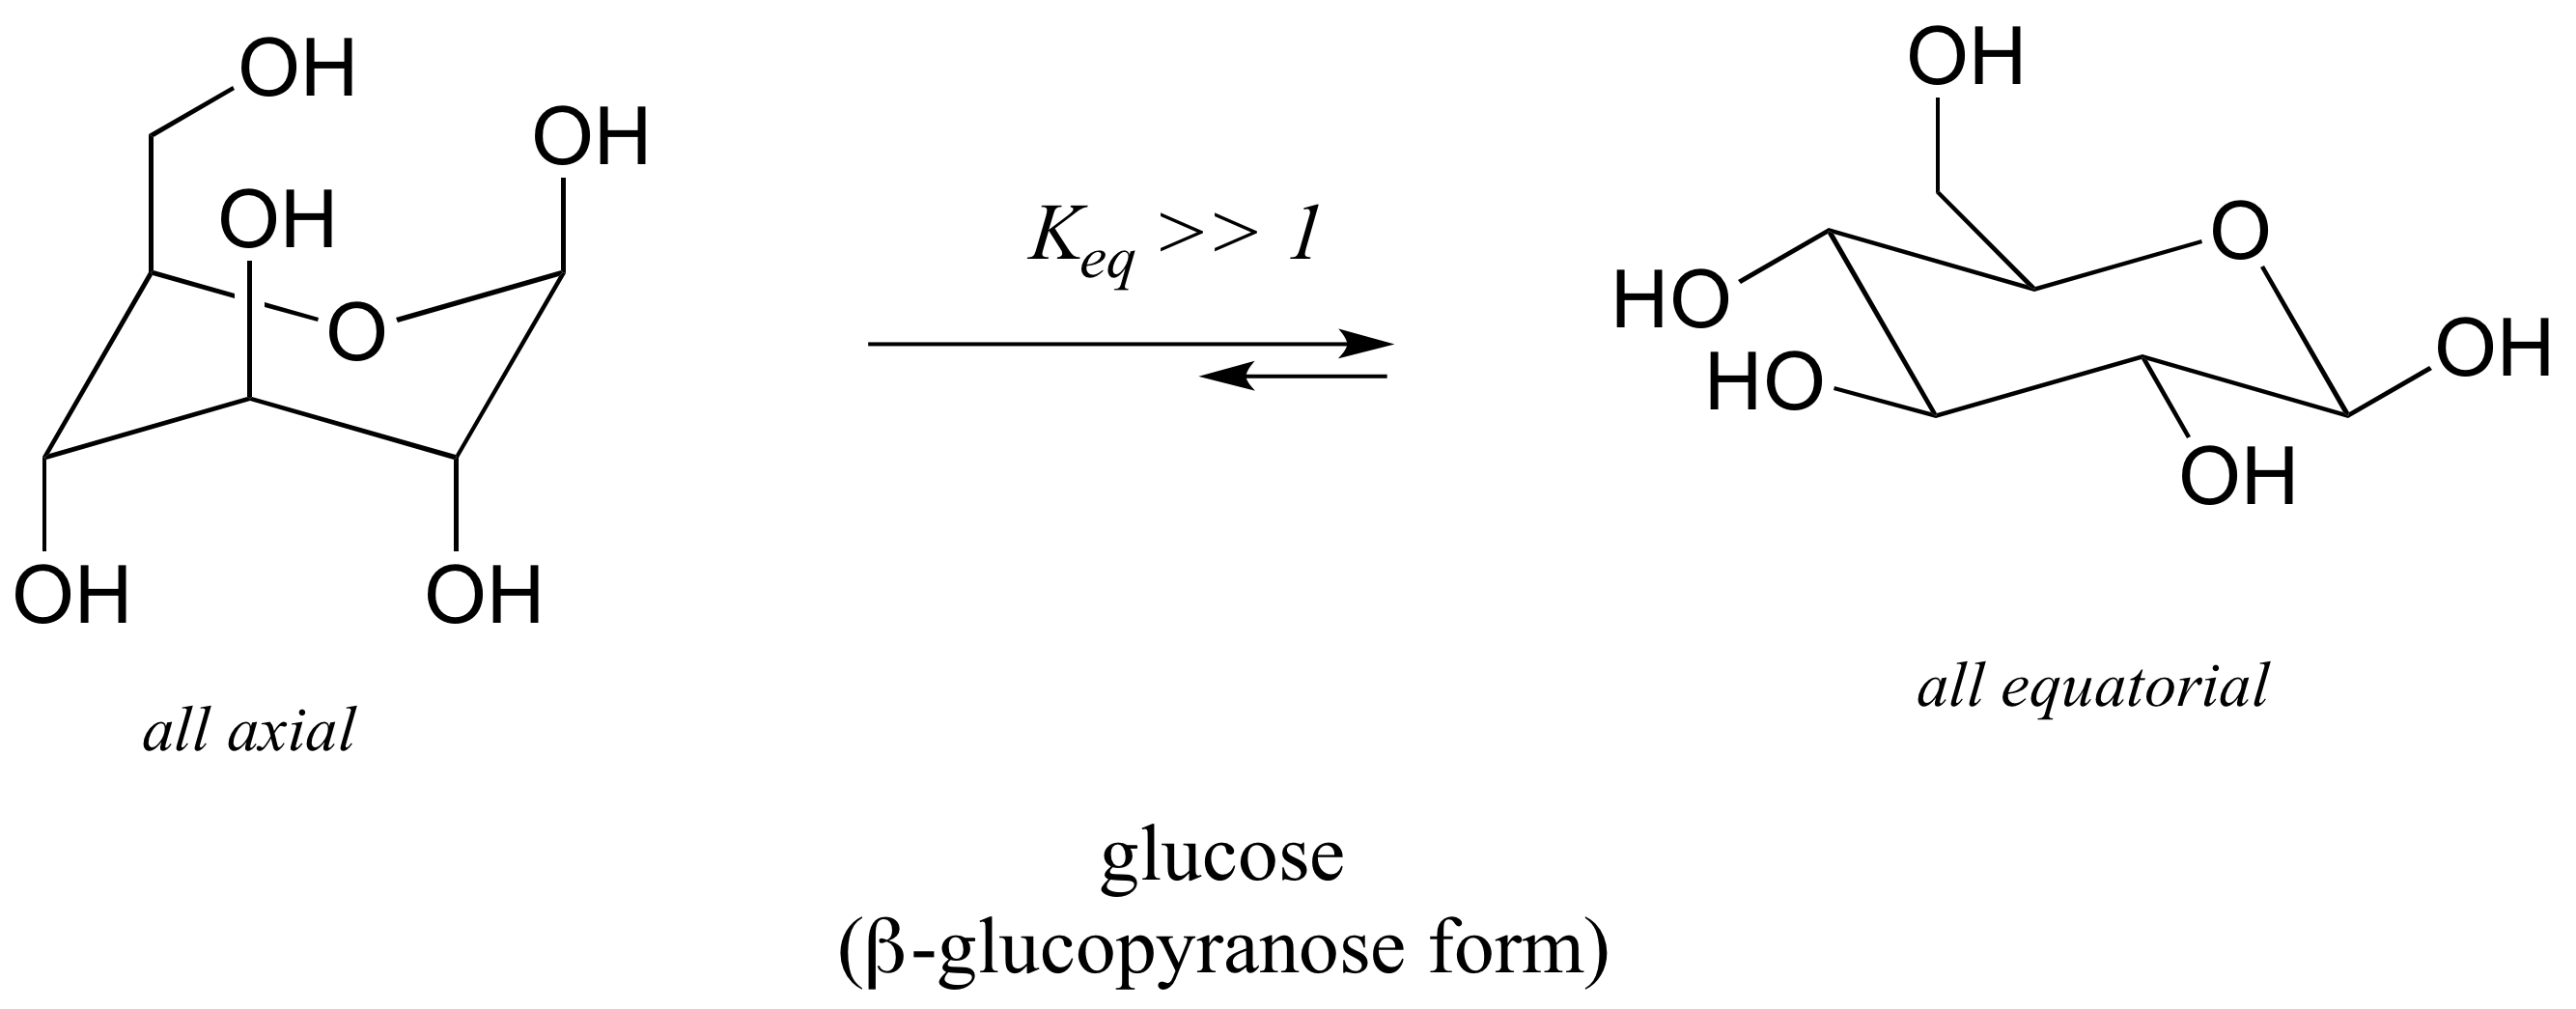 Molécula de glucosa en forma de anillo de seis miembros. A la izquierda, todos los sustituyentes axiales. A la derecha, todos los sustituyentes ecuatoriales. Constante de equilibrio mucho mayor a uno.